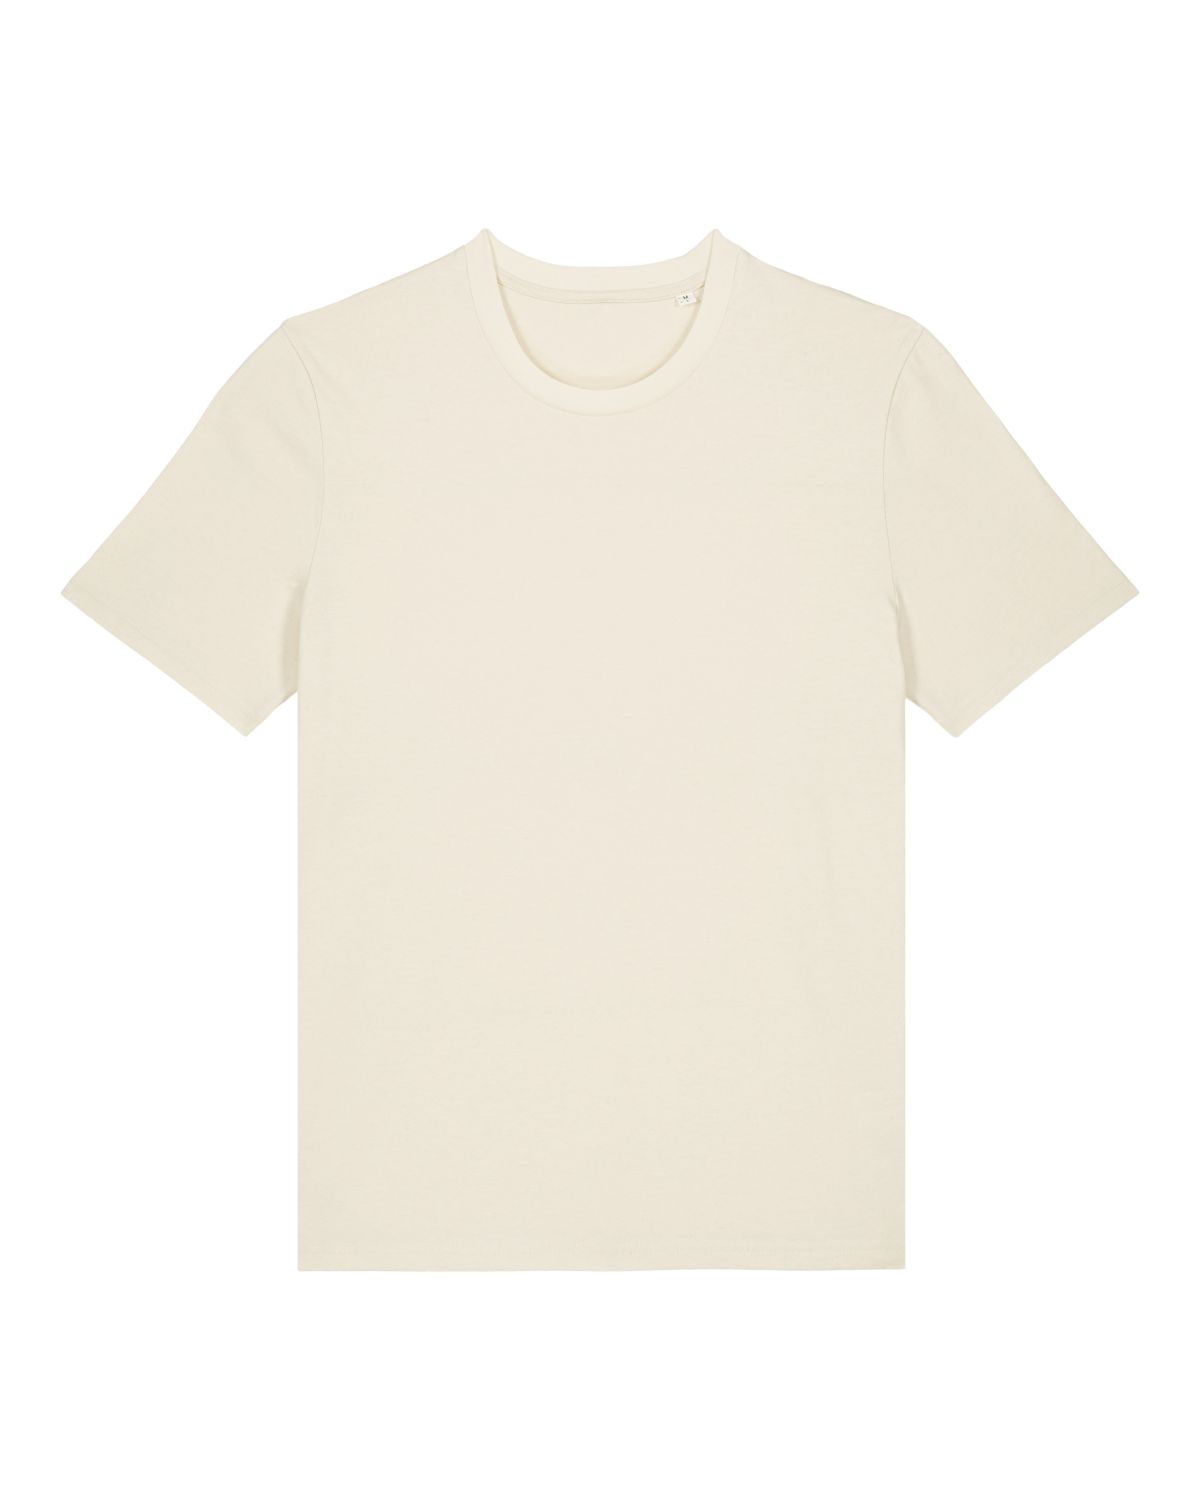 ICONIC BIO T-Shirt, Unisex 2.0